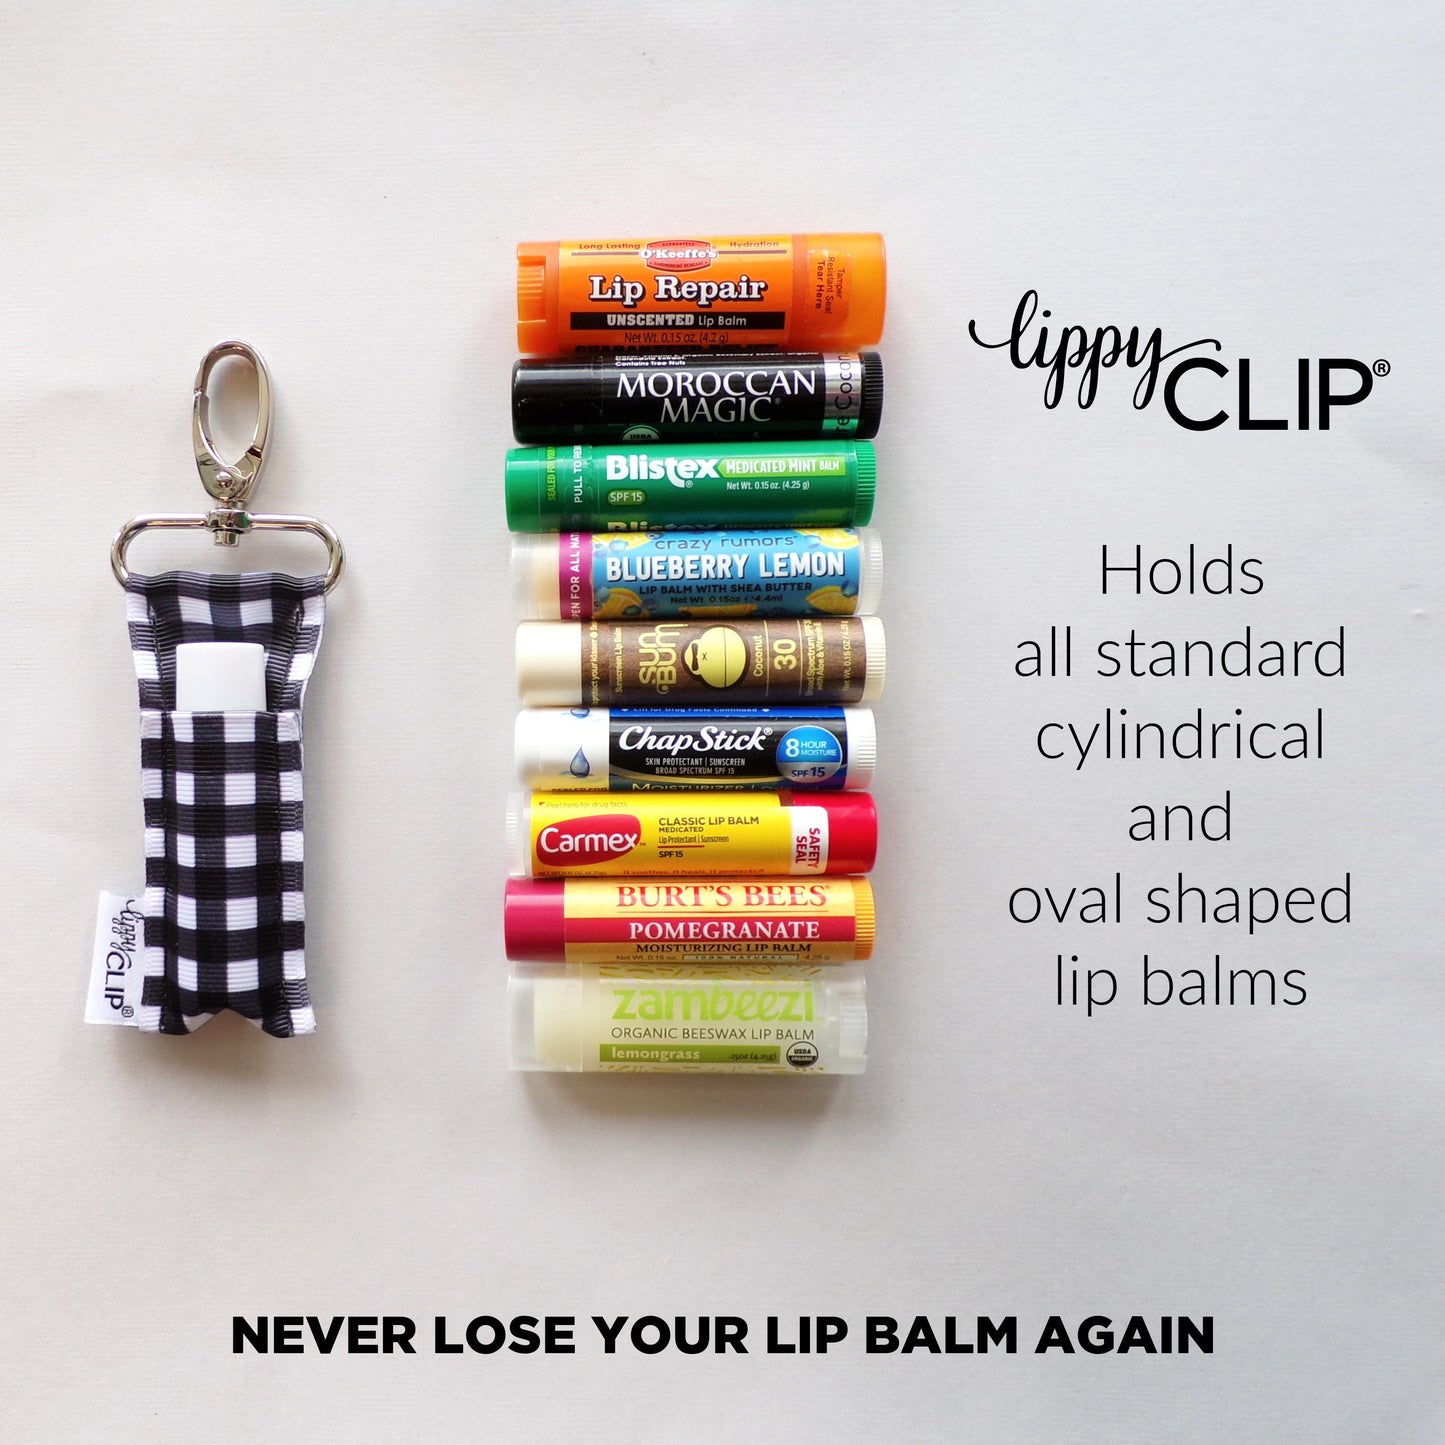 USA LippyClip® Lip Balm Holder